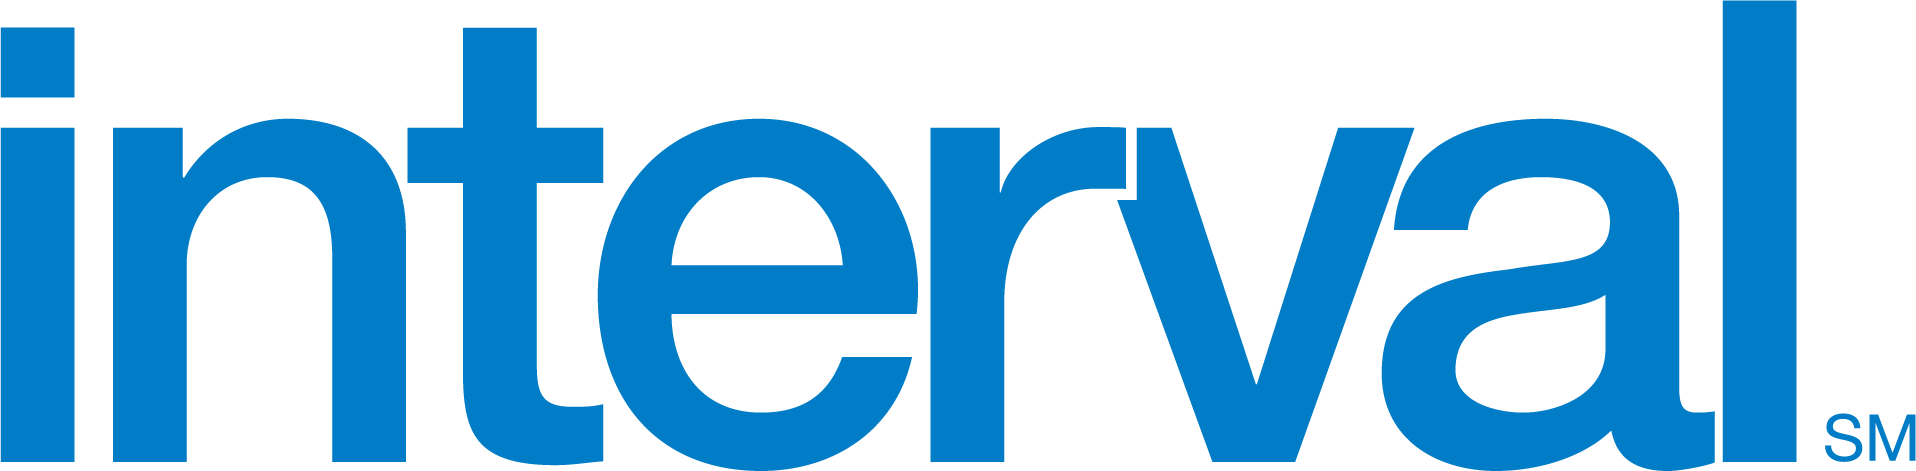 Interval International Logo